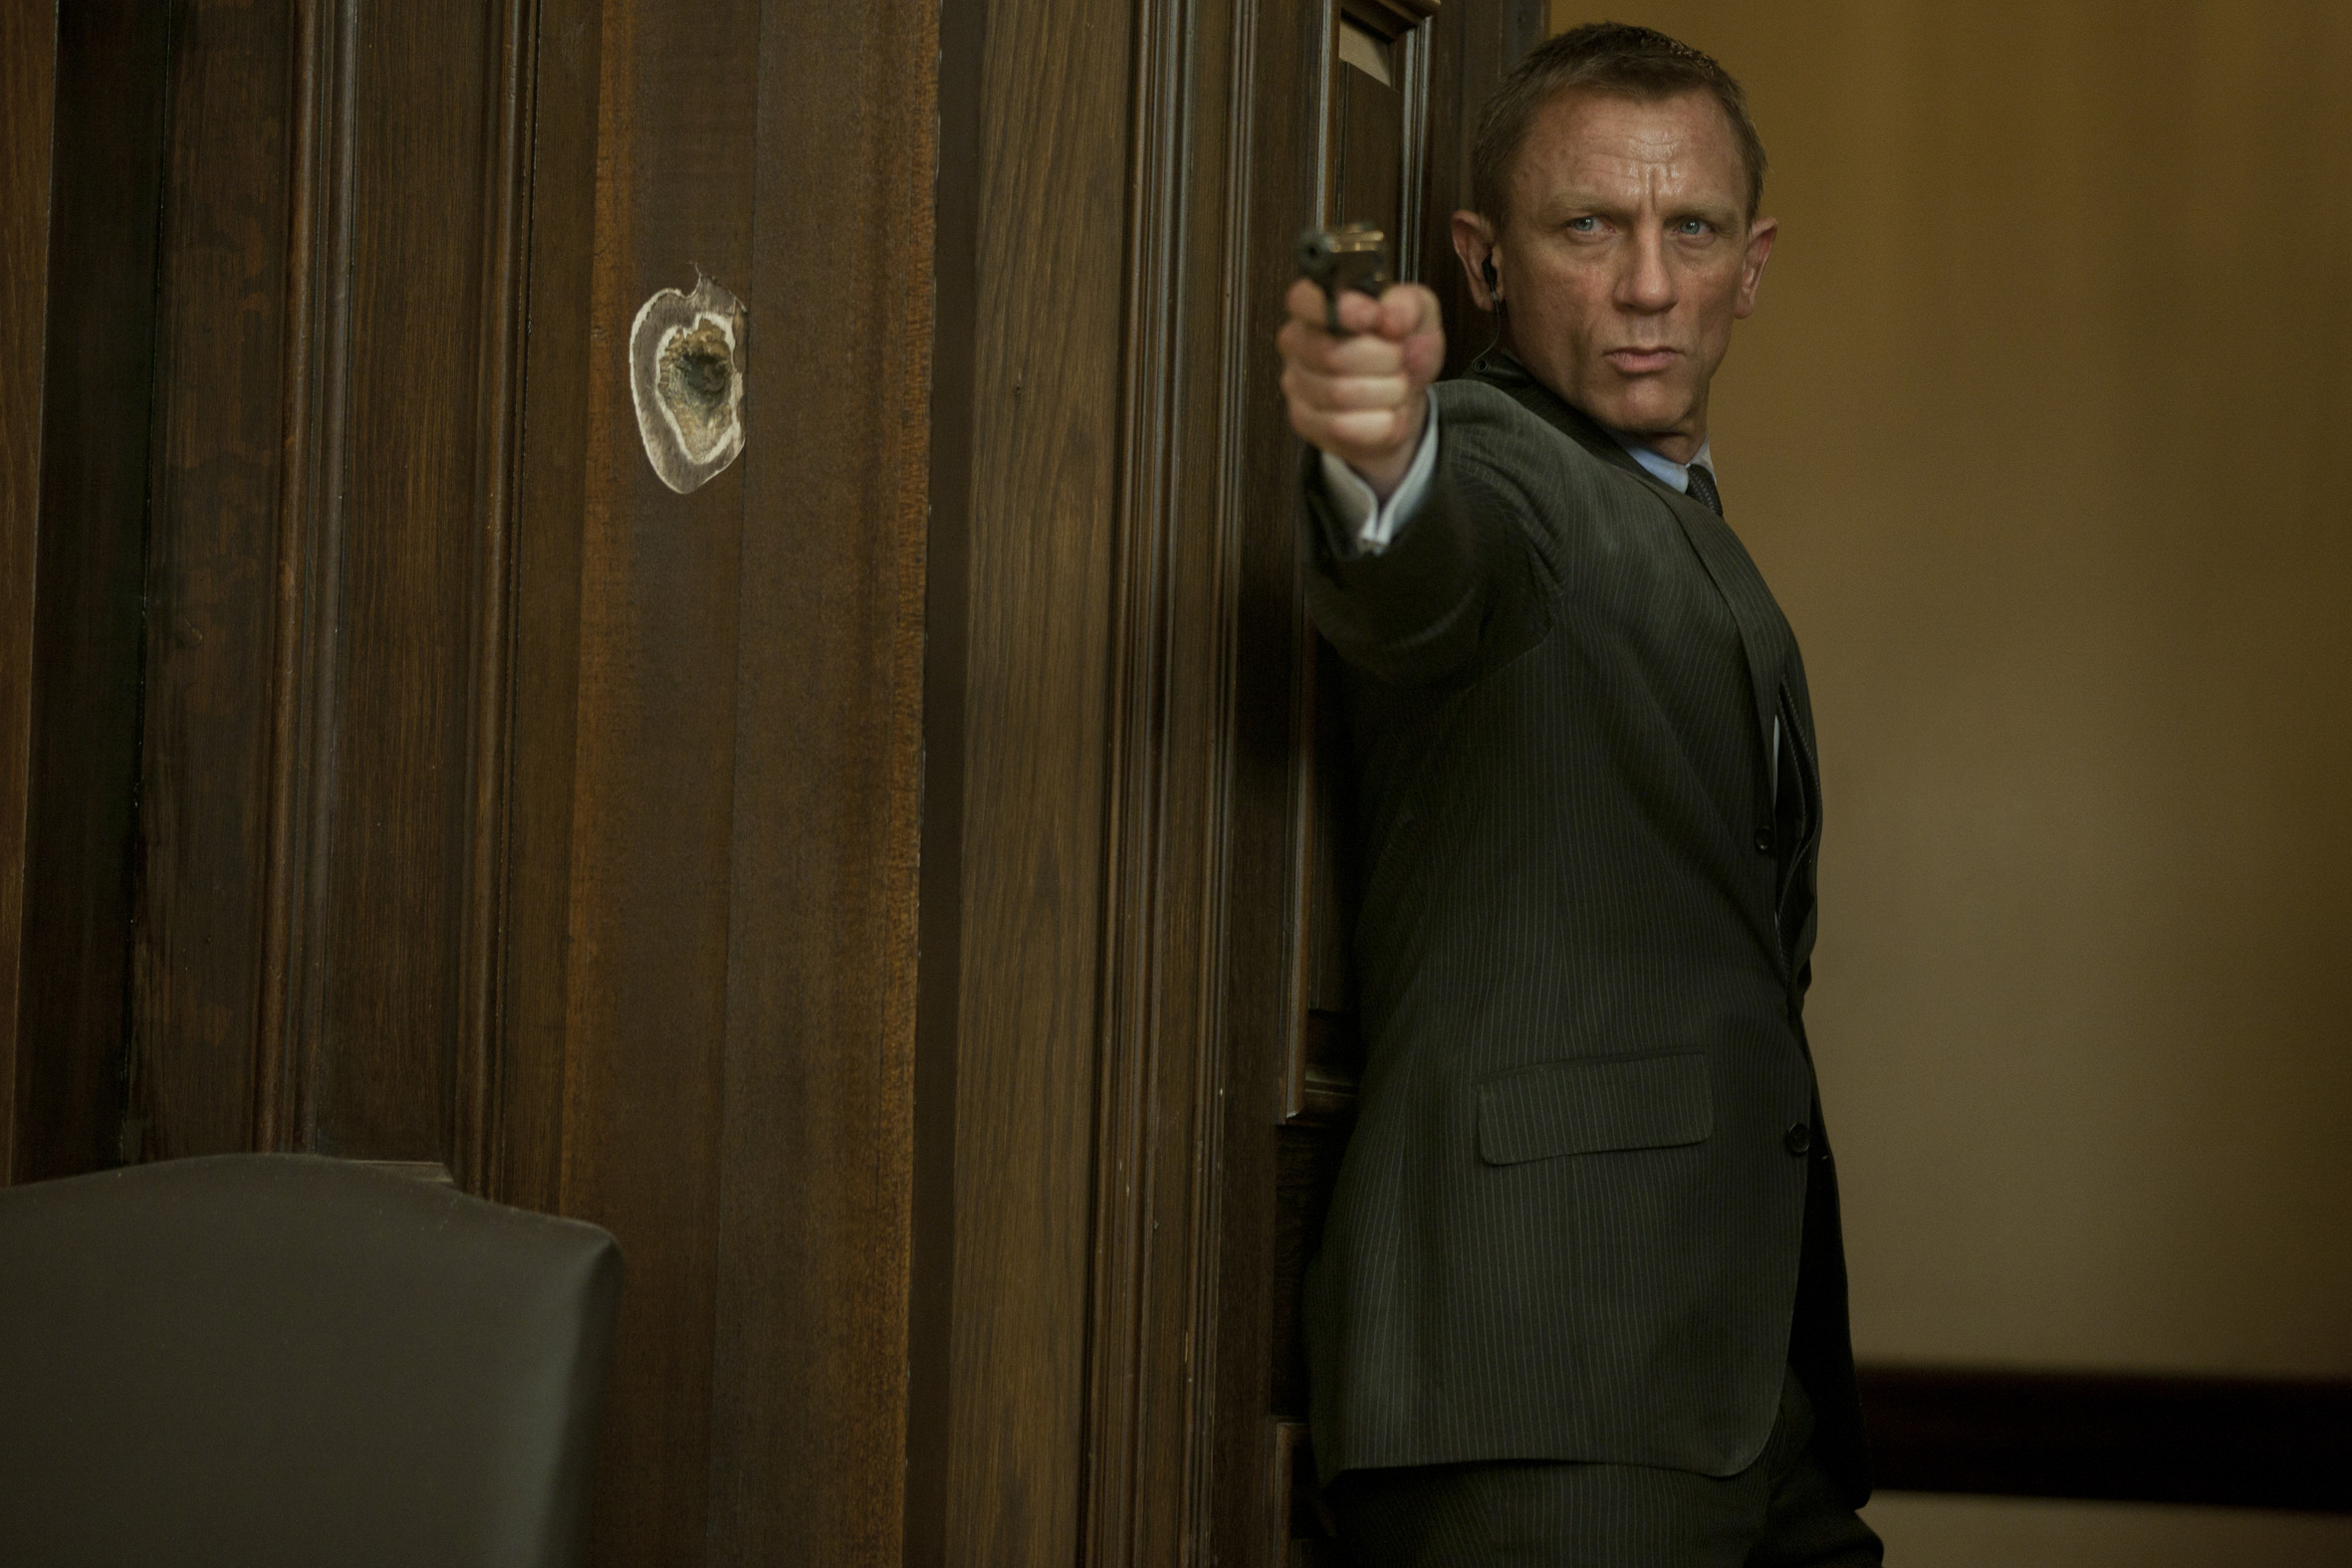 The Actor - James Bond Daniel Craig Ppk - HD Wallpaper 